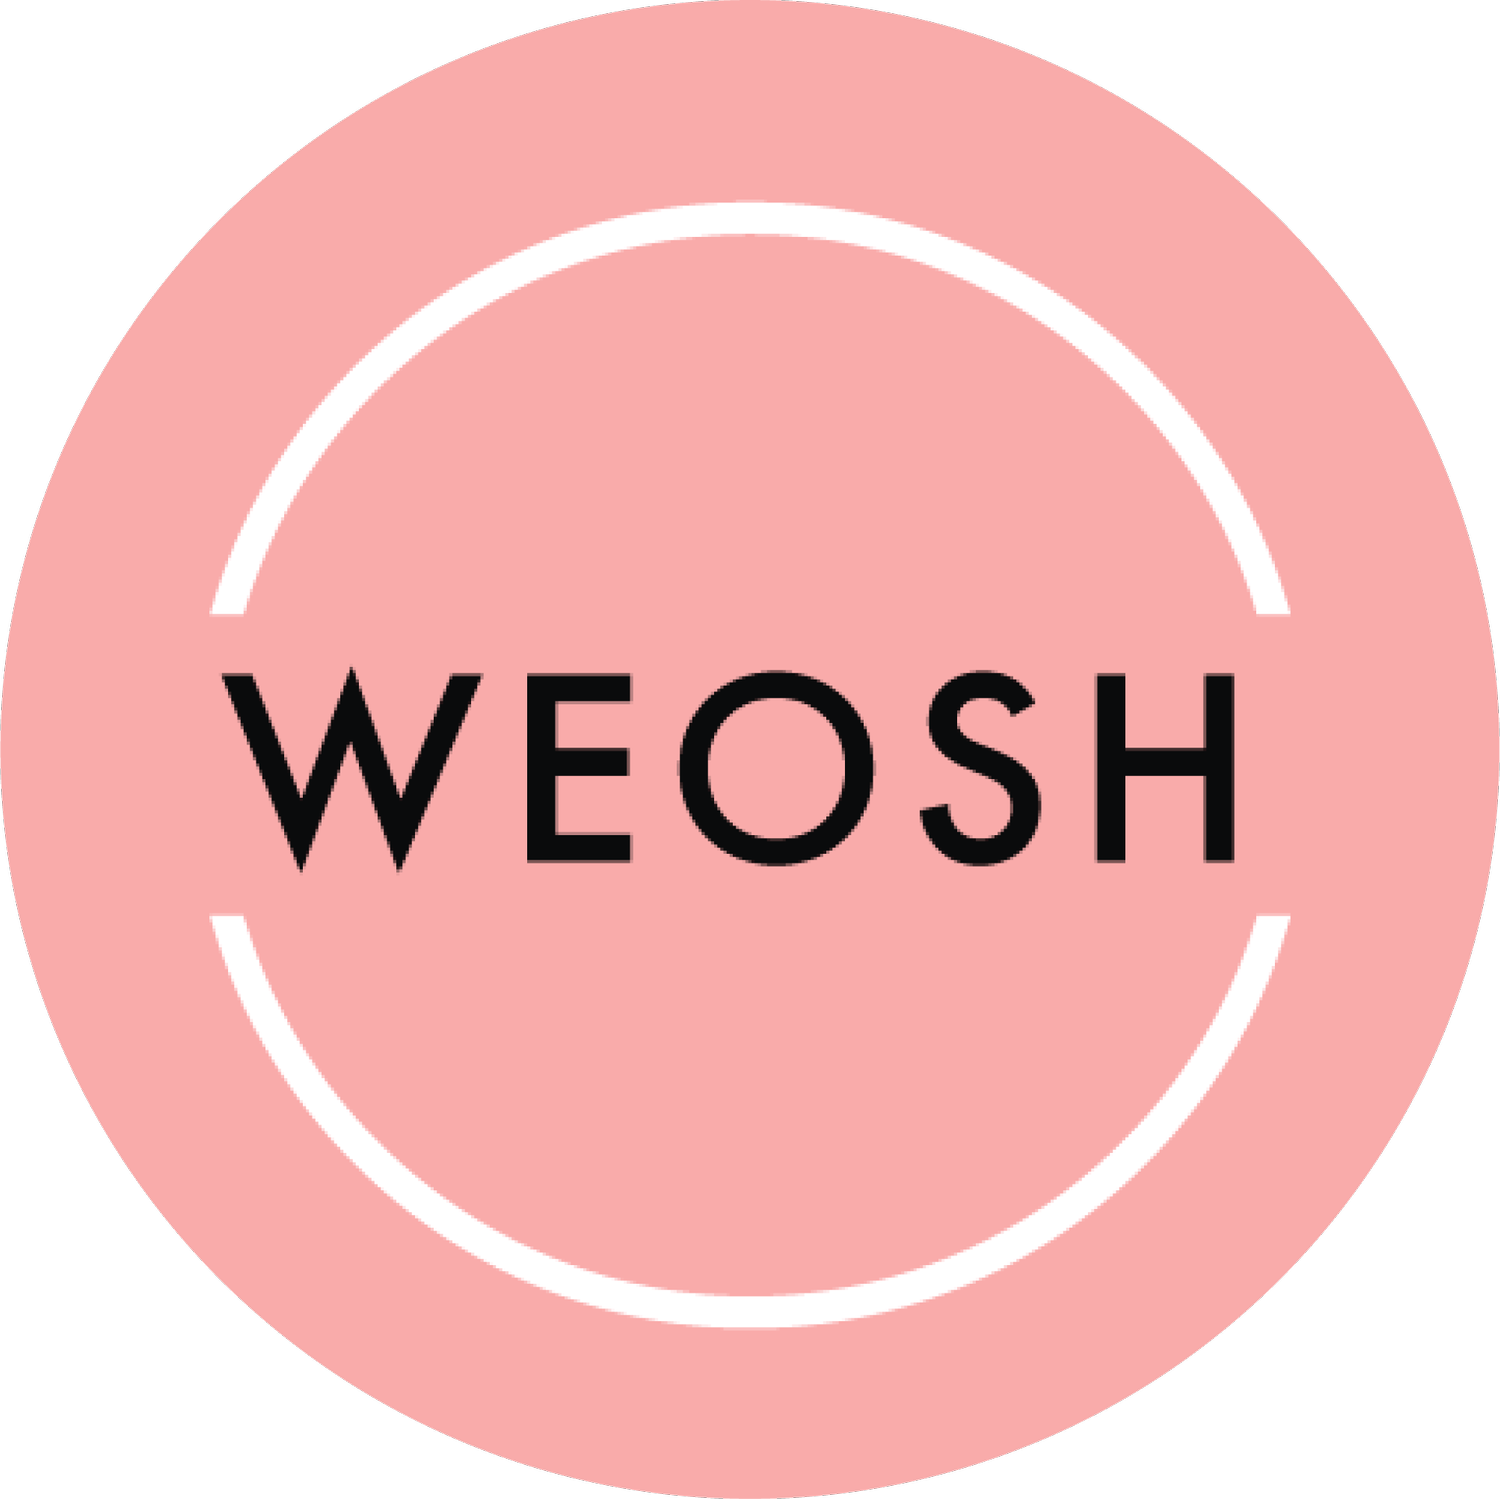 Weosh